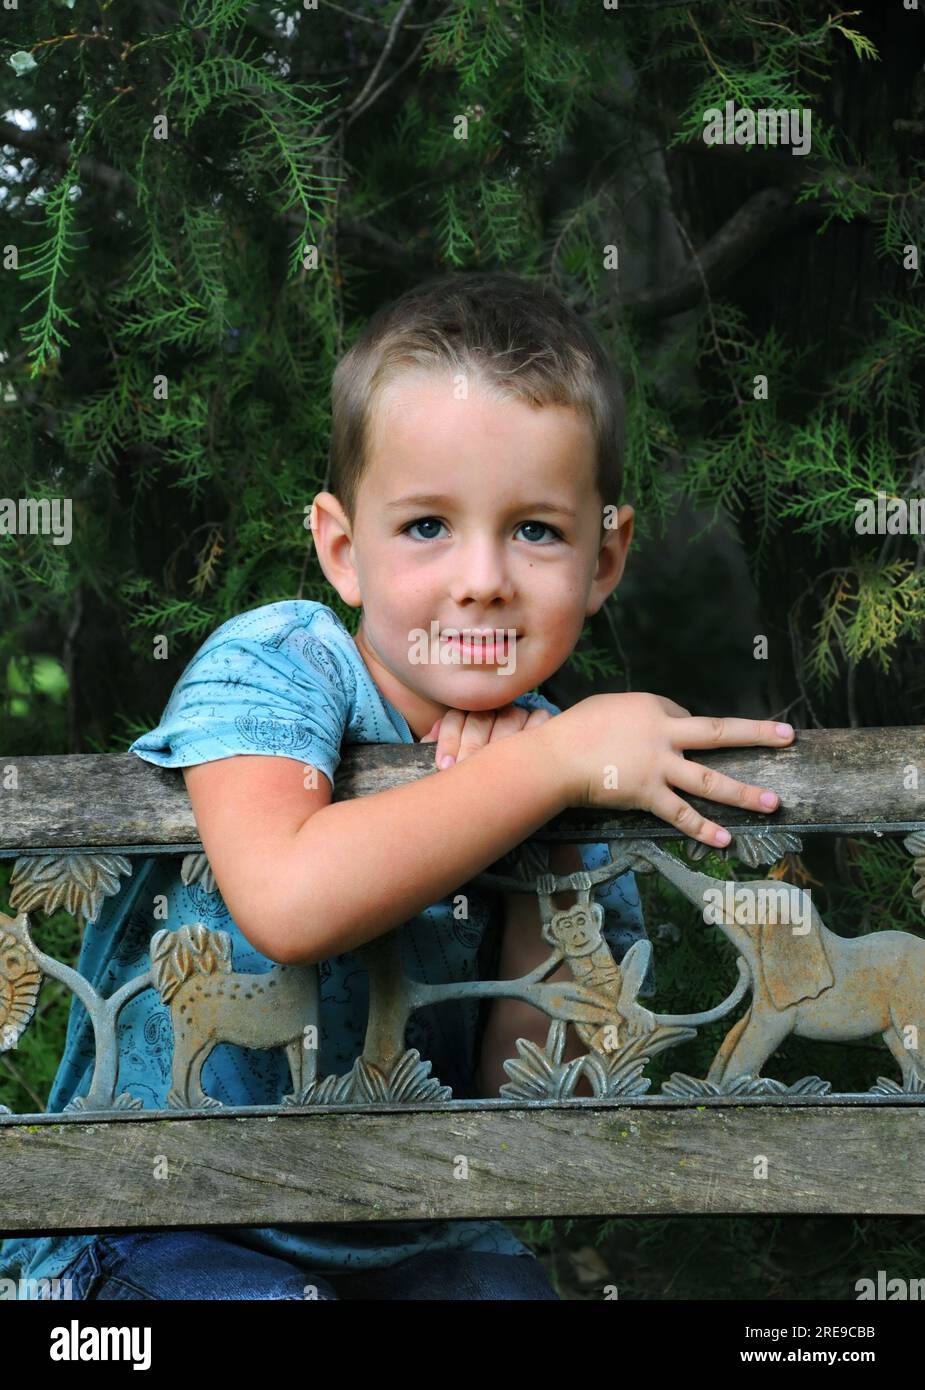 Il bambino si diverte a sognare un giorno da ragazzo, appoggiandosi su una panchina di legno in un parco alberato. Ha una camicia blu e dei jeans. Foto Stock